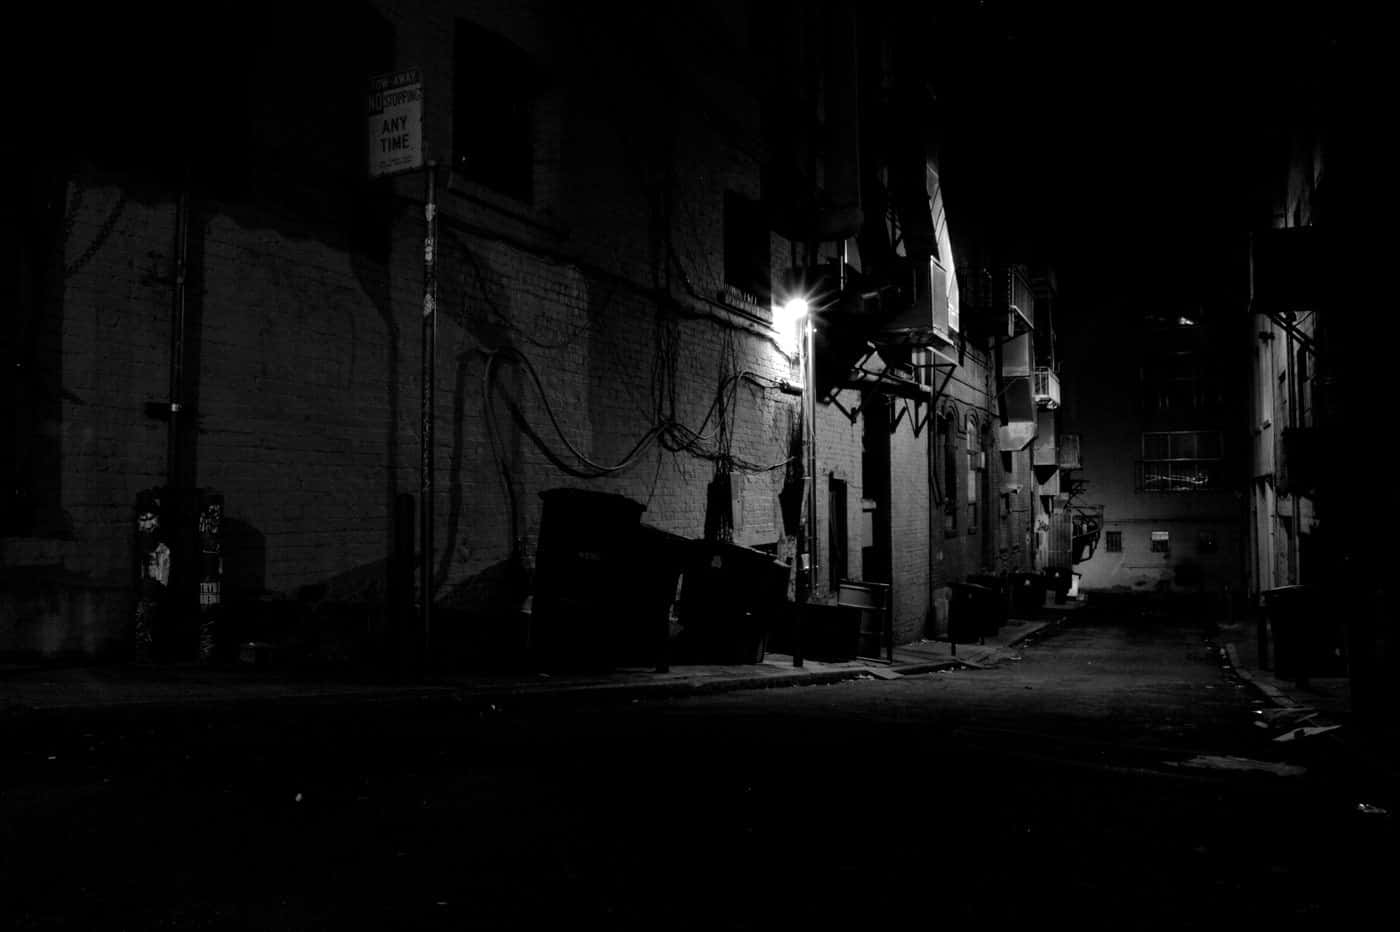 A Dark Alleyway